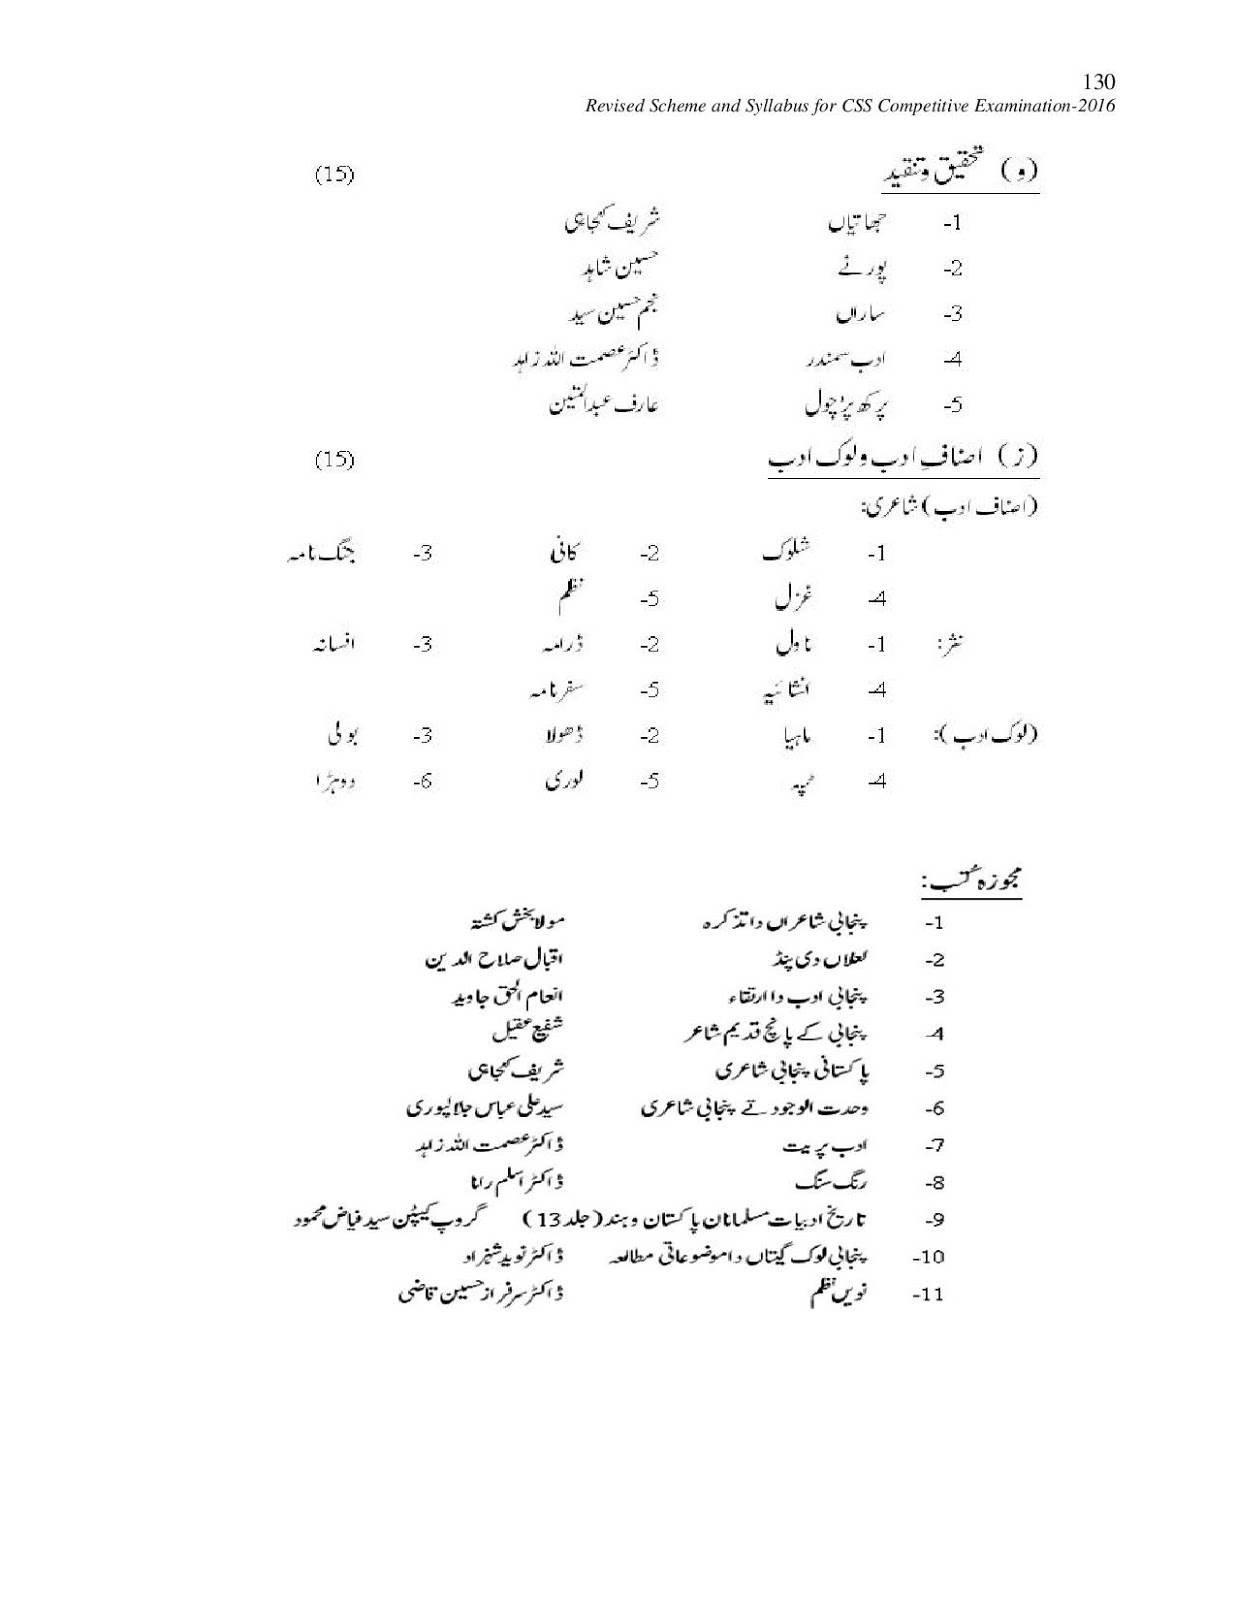 Latest CCS 2016 Jobs Syllabus Paper for Punjabi